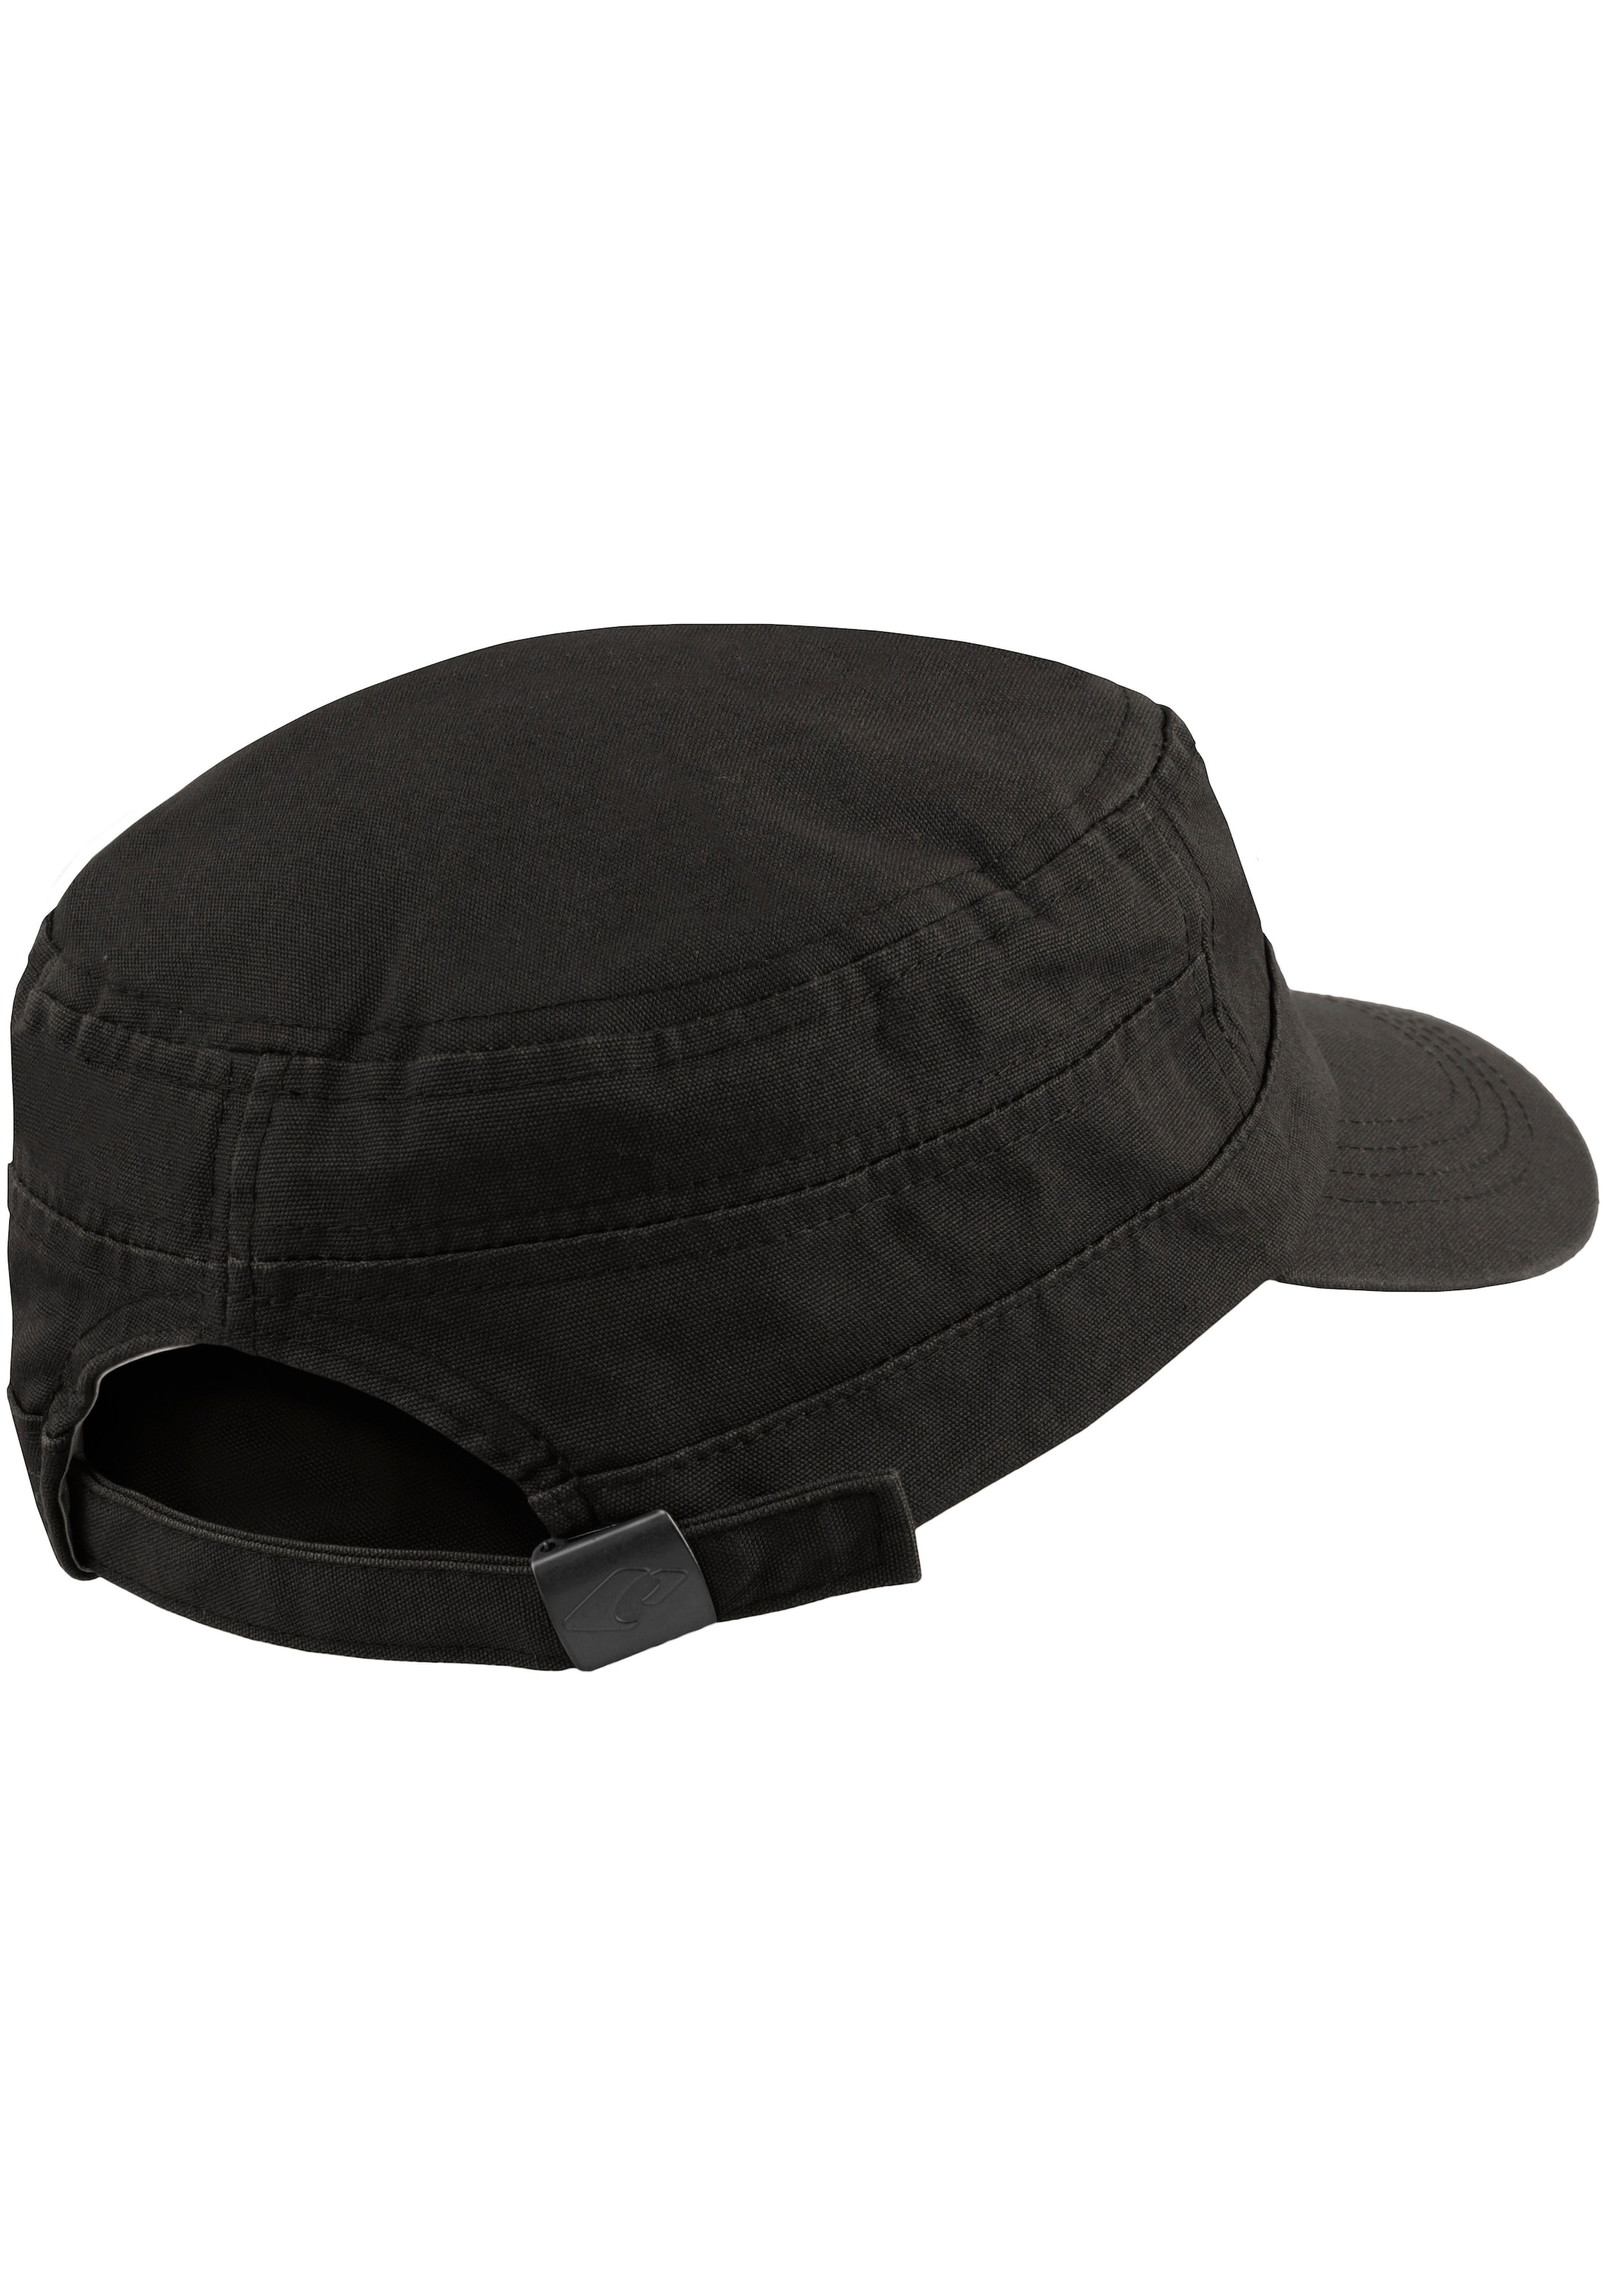 Entdecke chillouts Army Cap auf reiner atmungsaktiv, aus One Baumwolle, »El Paso Hat«, Size